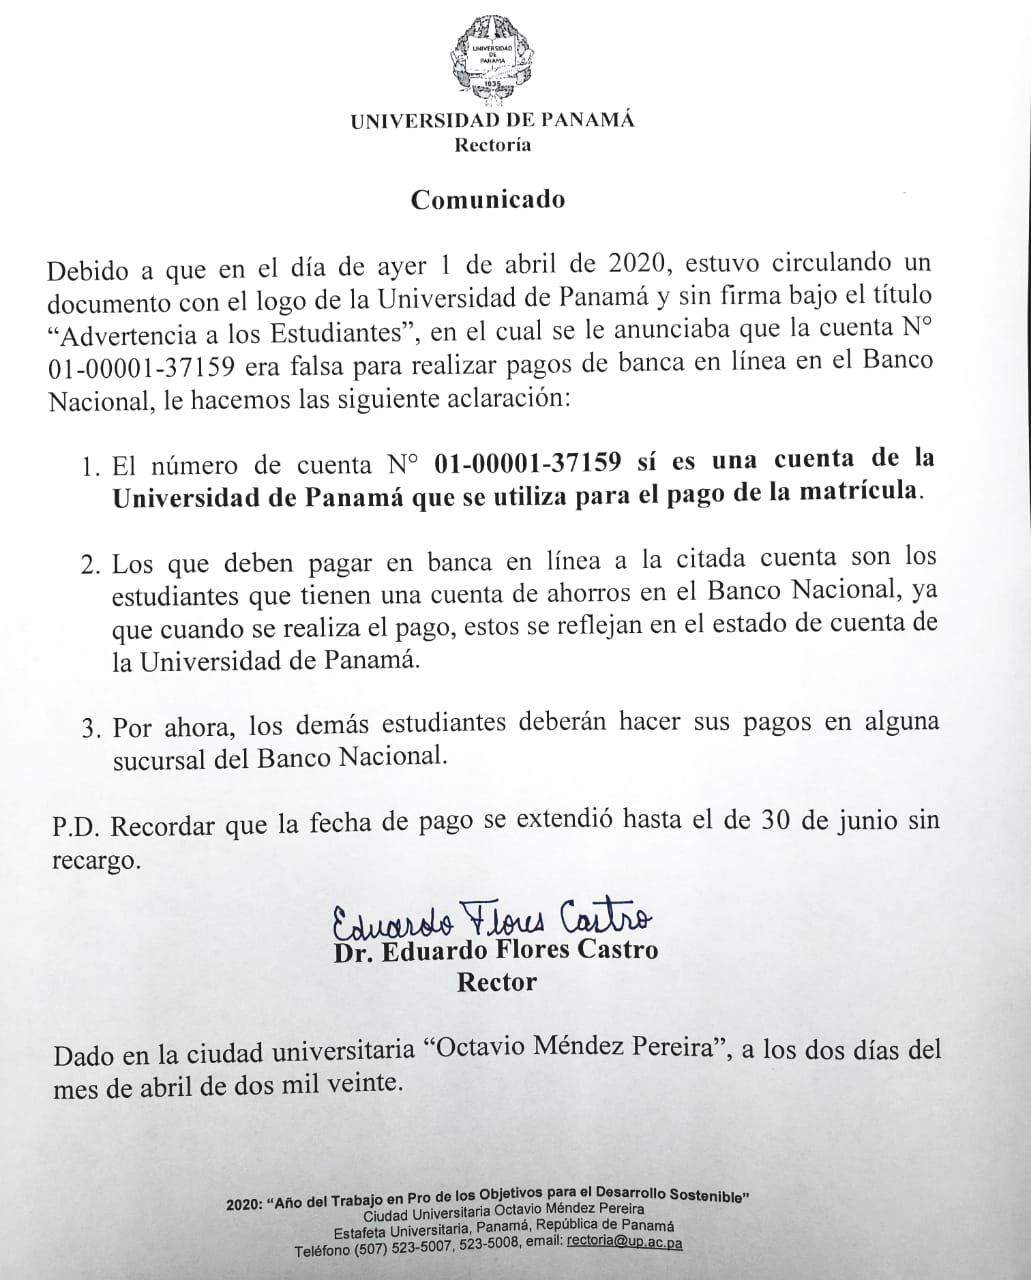 Información oficial sobre el pago de la matrícula en la Universidad de Panamá